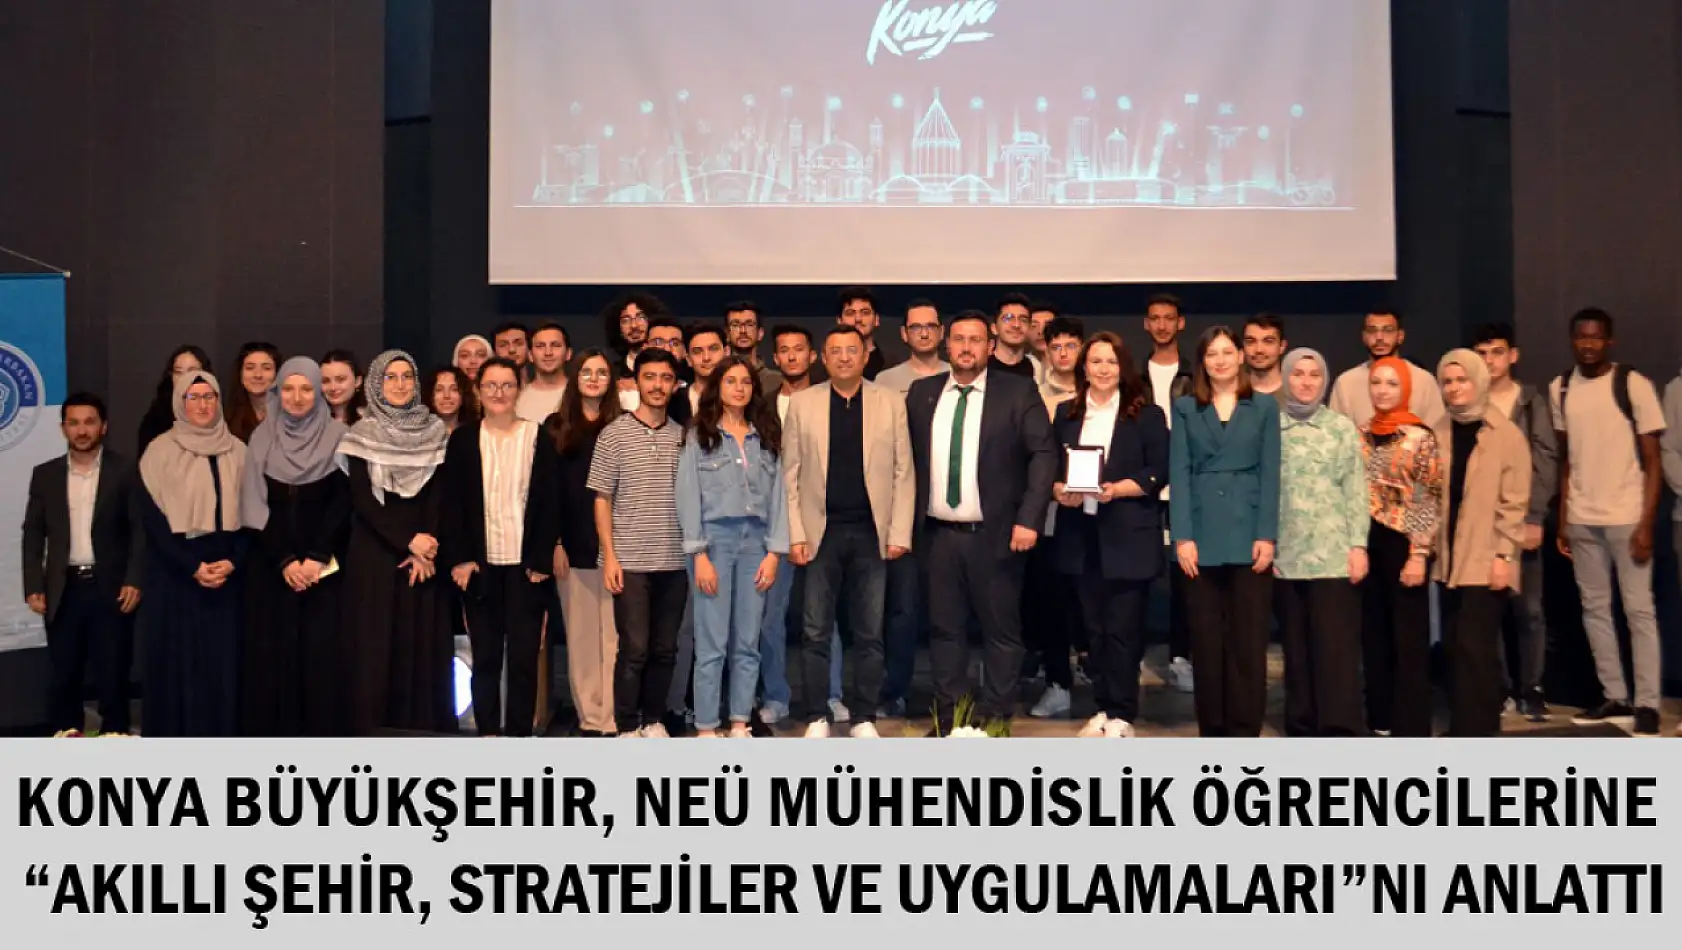 Konya Büyükşehir, Neü Mühendislik Öğrencilerine 'Akıllı Şehir, Stratejiler Ve Uygulamaları'nı anlattı